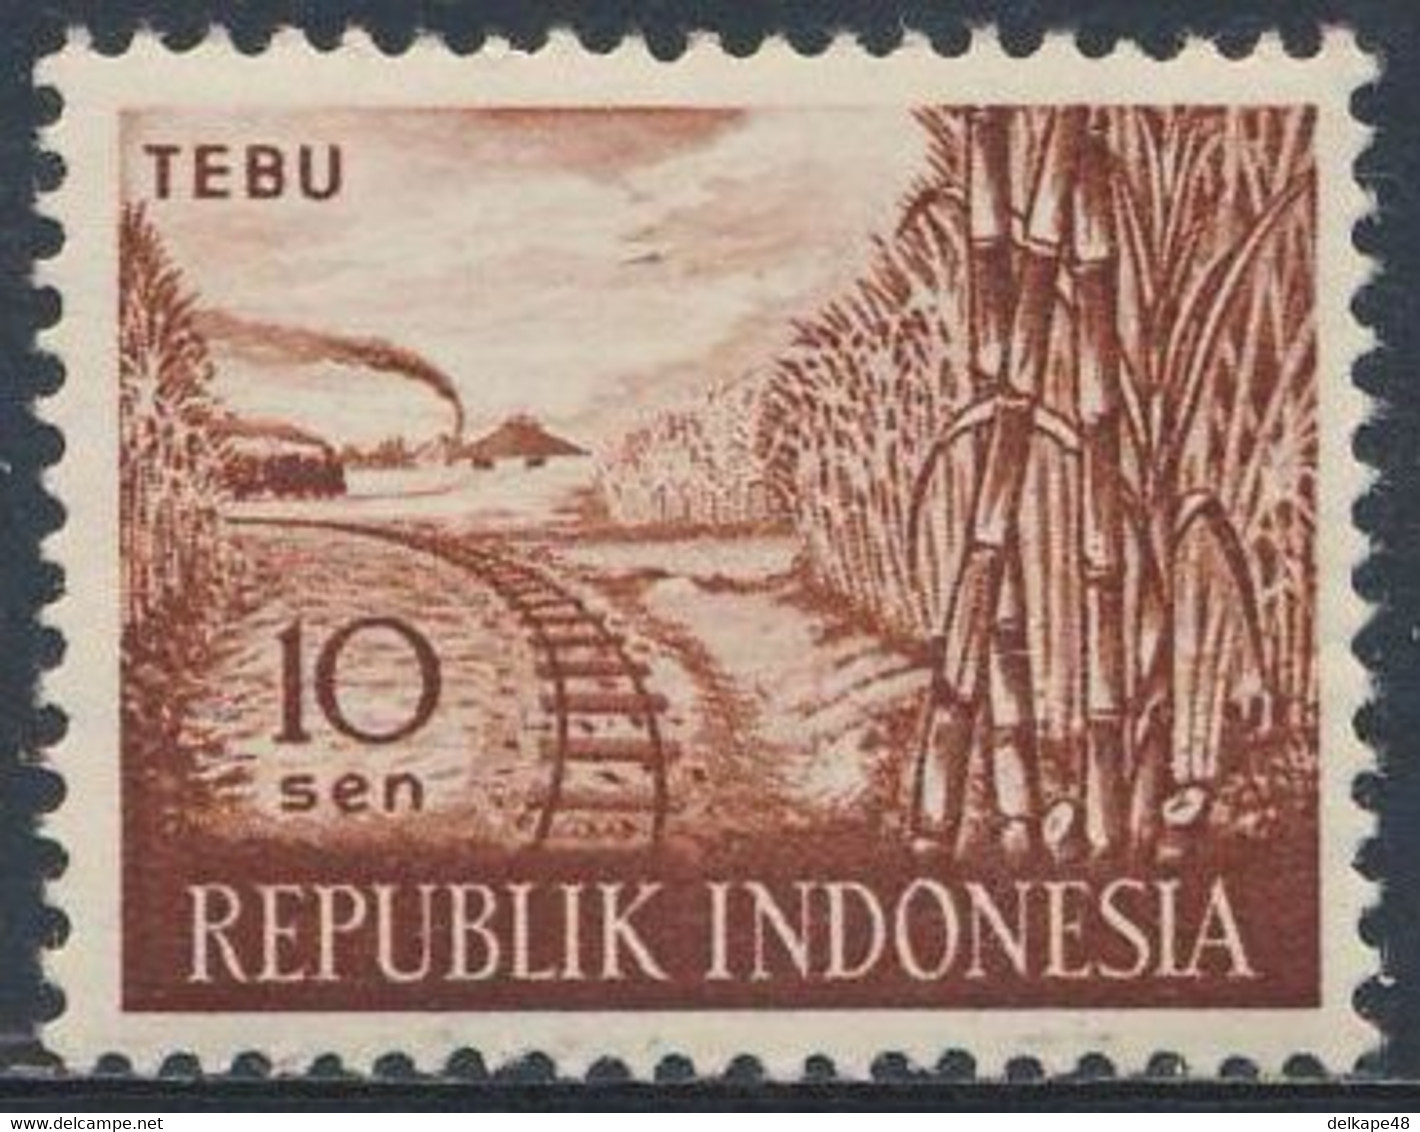 Indonesia Indonesie 1960 Mi 270 Sc 269 SG 831 * MH - Saccharum Officinarum: Sugar Cane + Railway Line / Zuckerrohr - Légumes